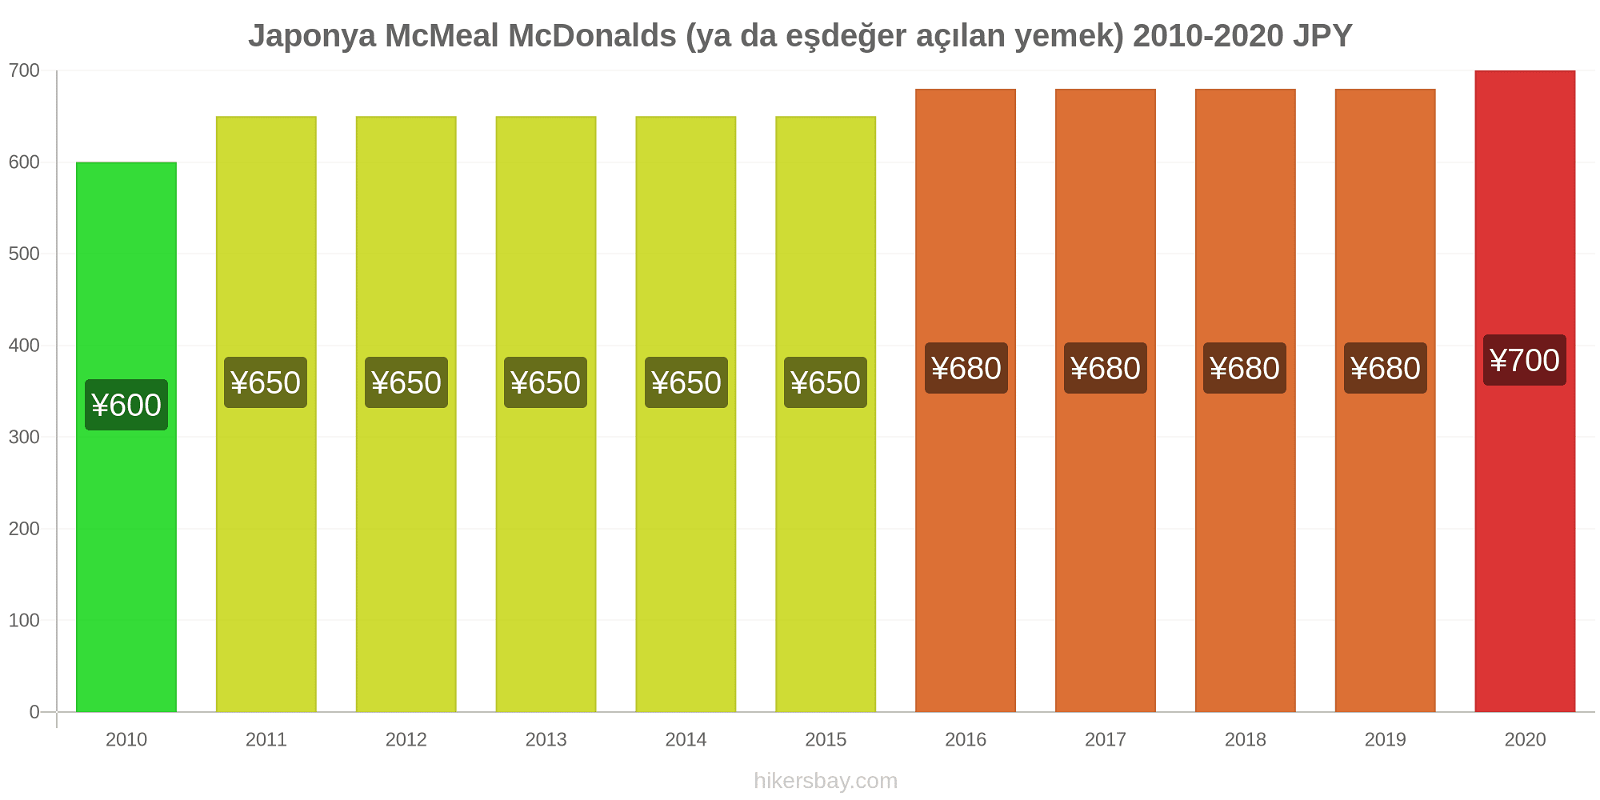 Japonya fiyat değişiklikleri McMeal McDonalds (ya da eşdeğer açılan yemek) hikersbay.com